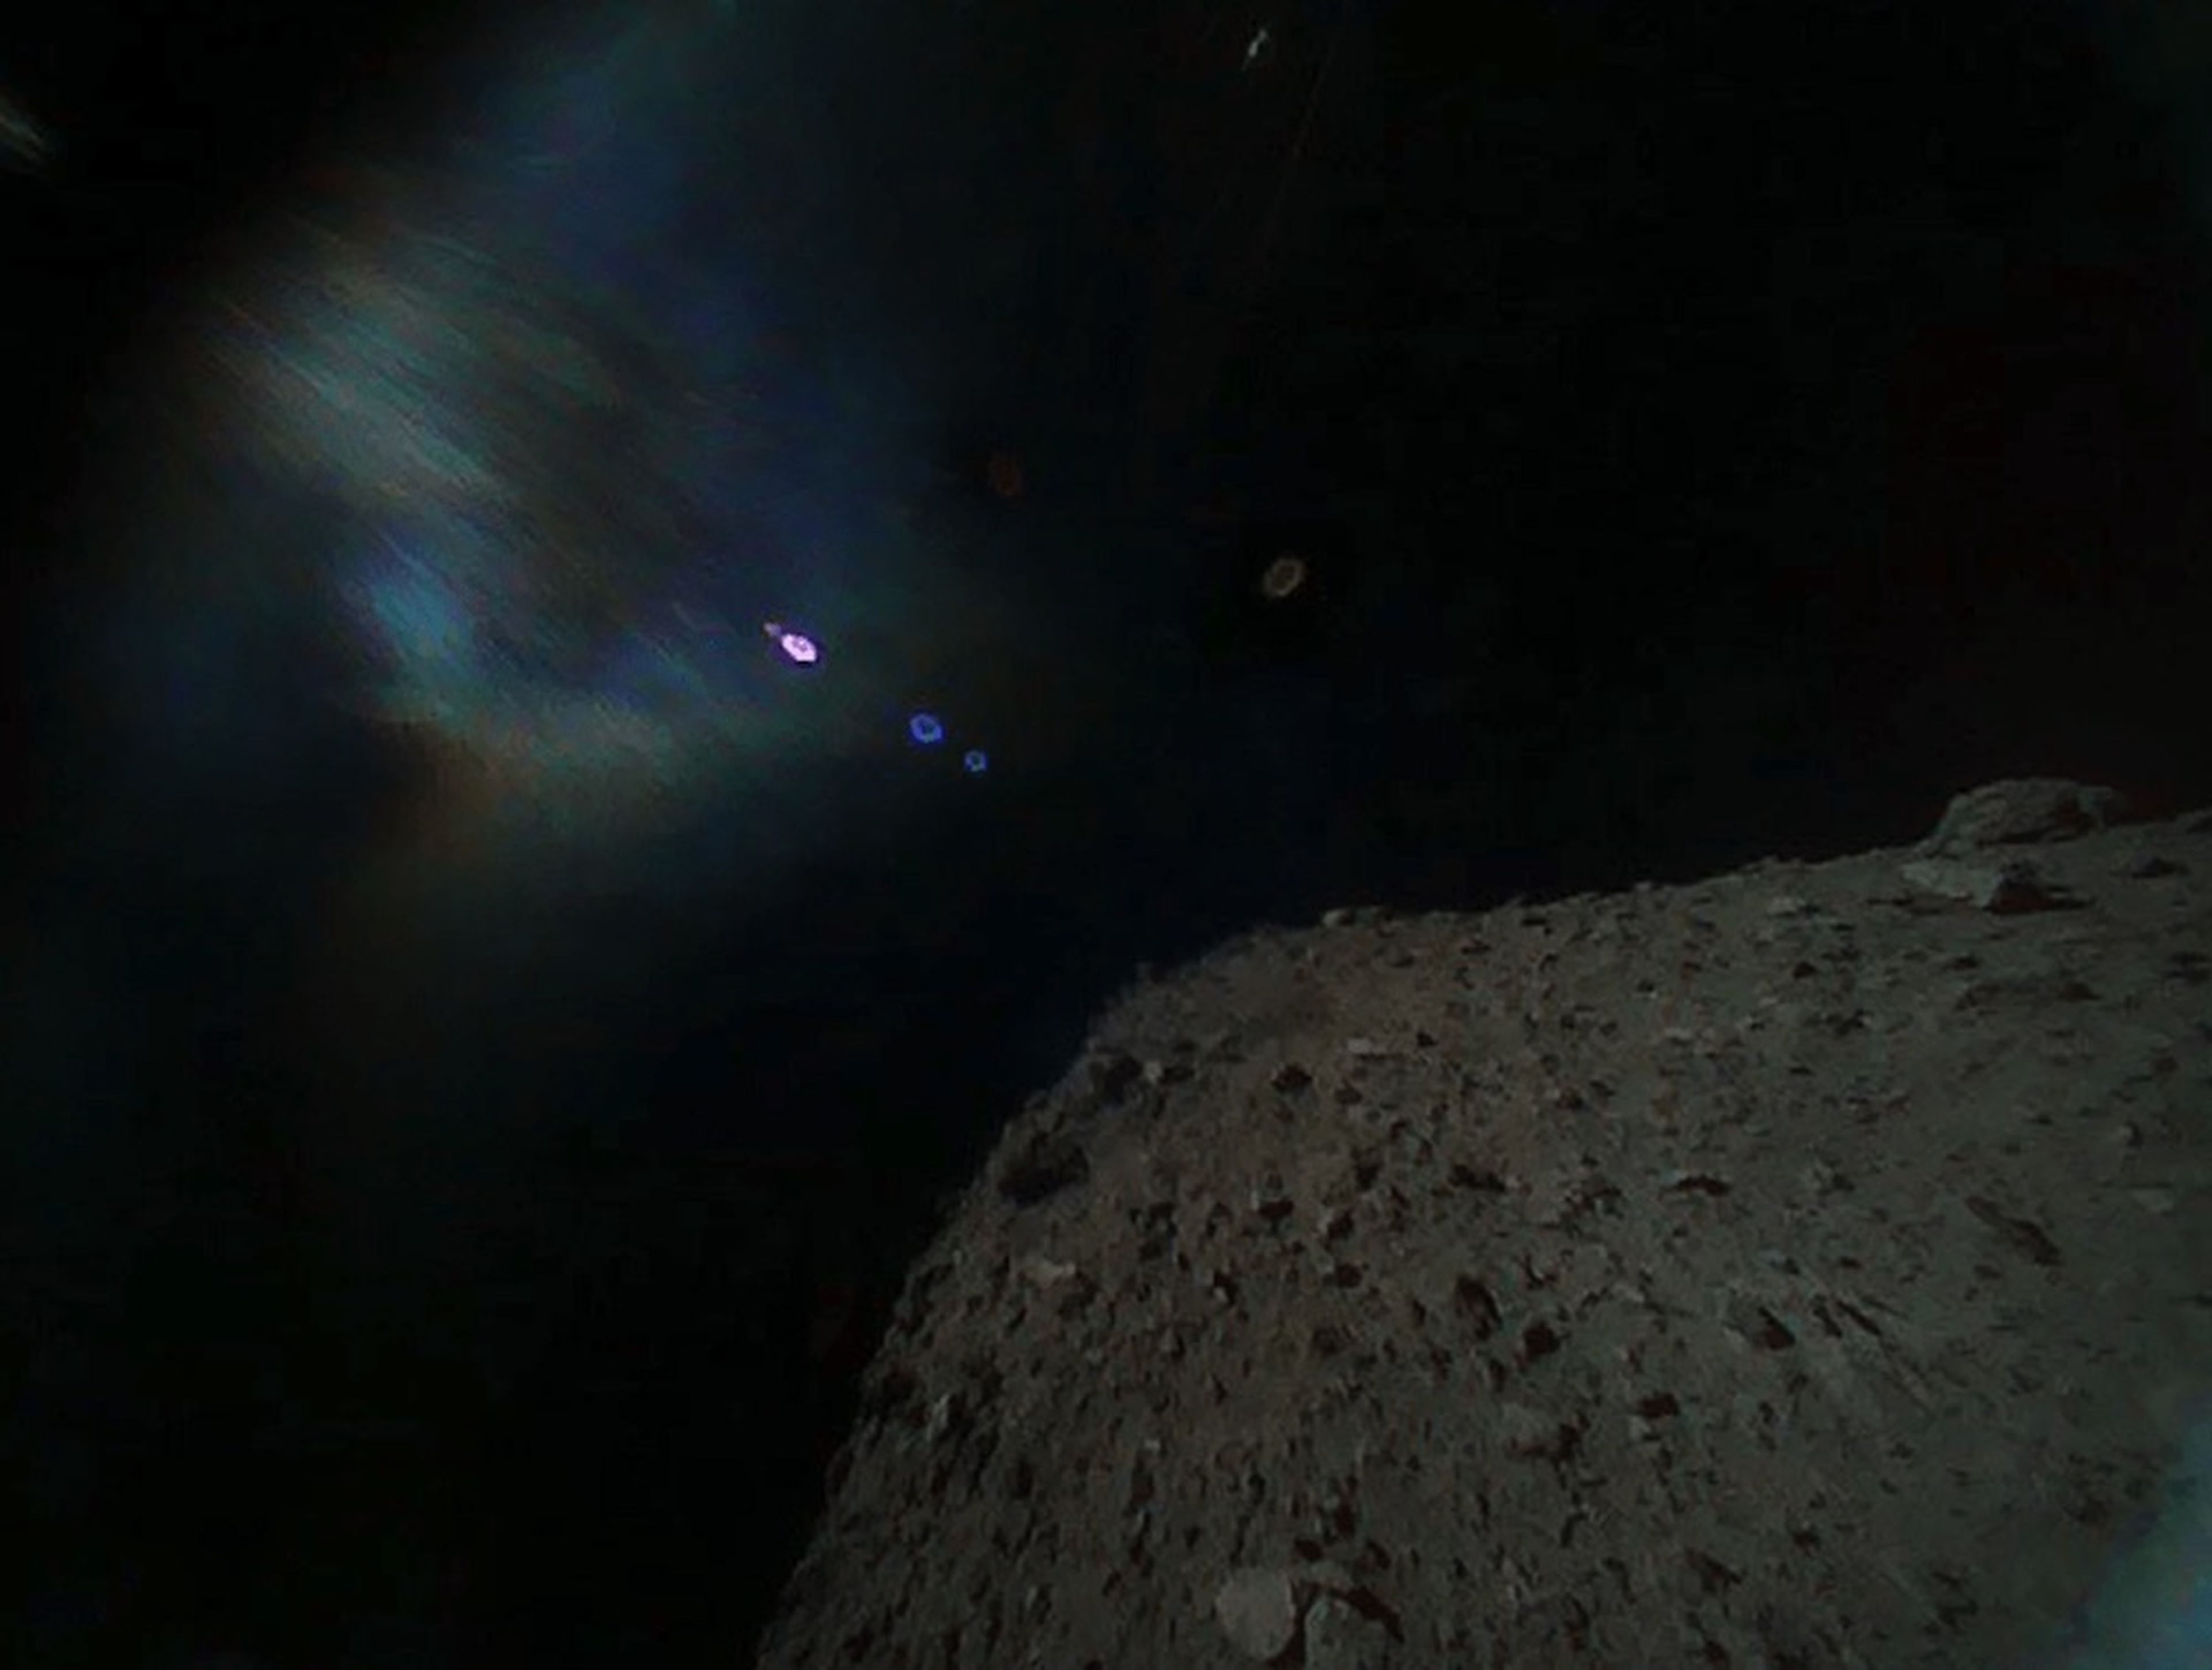 La vista desde el asteroide.